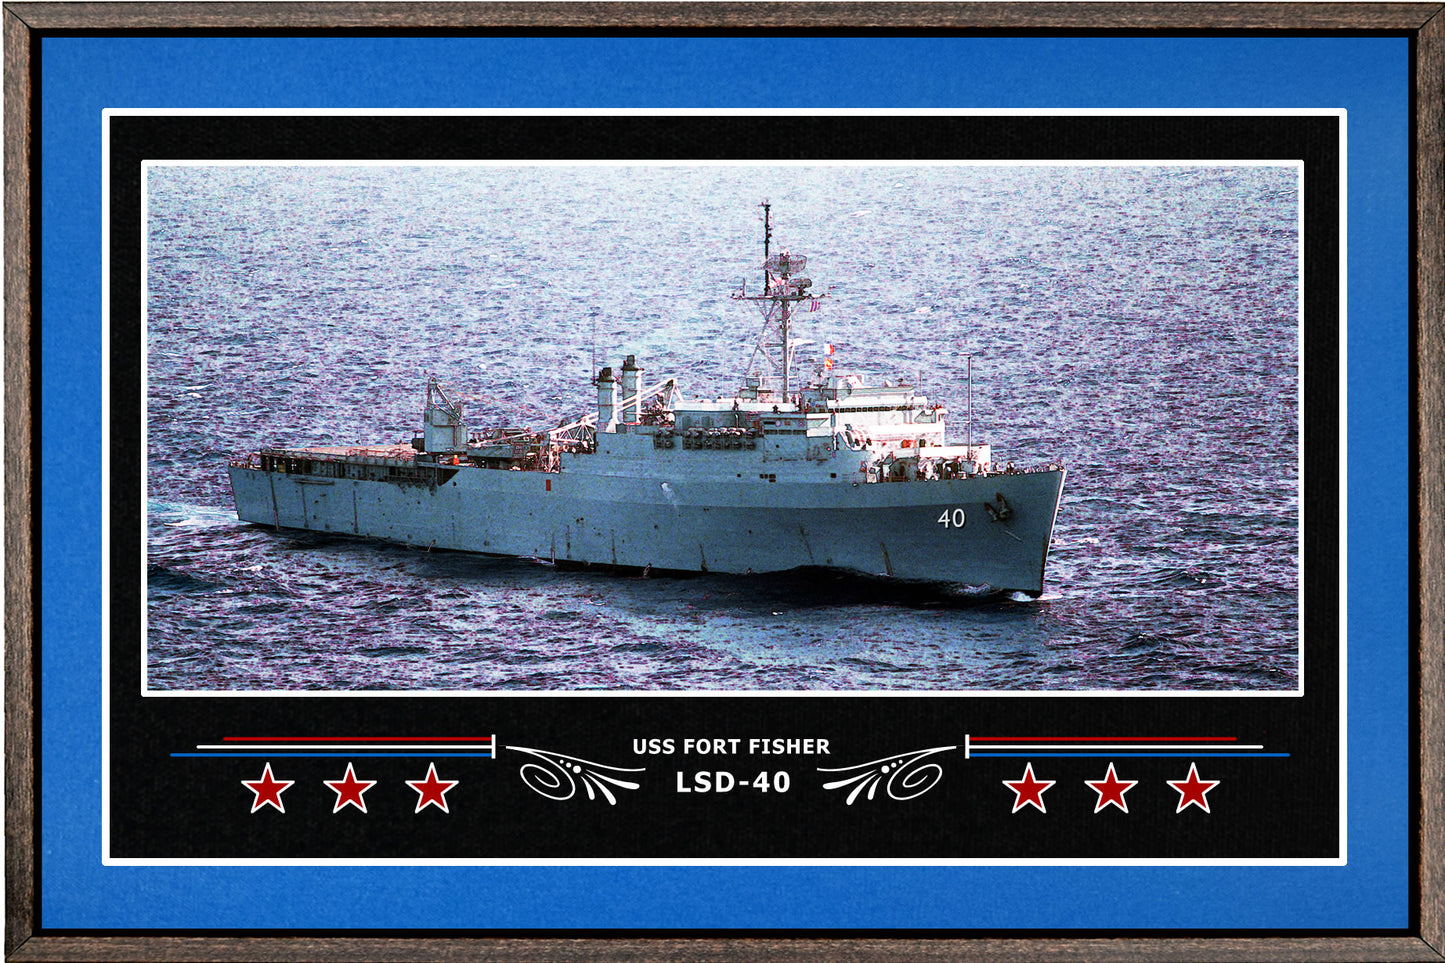 USS FORT FISHER LSD 40 BOX FRAMED CANVAS ART BLUE